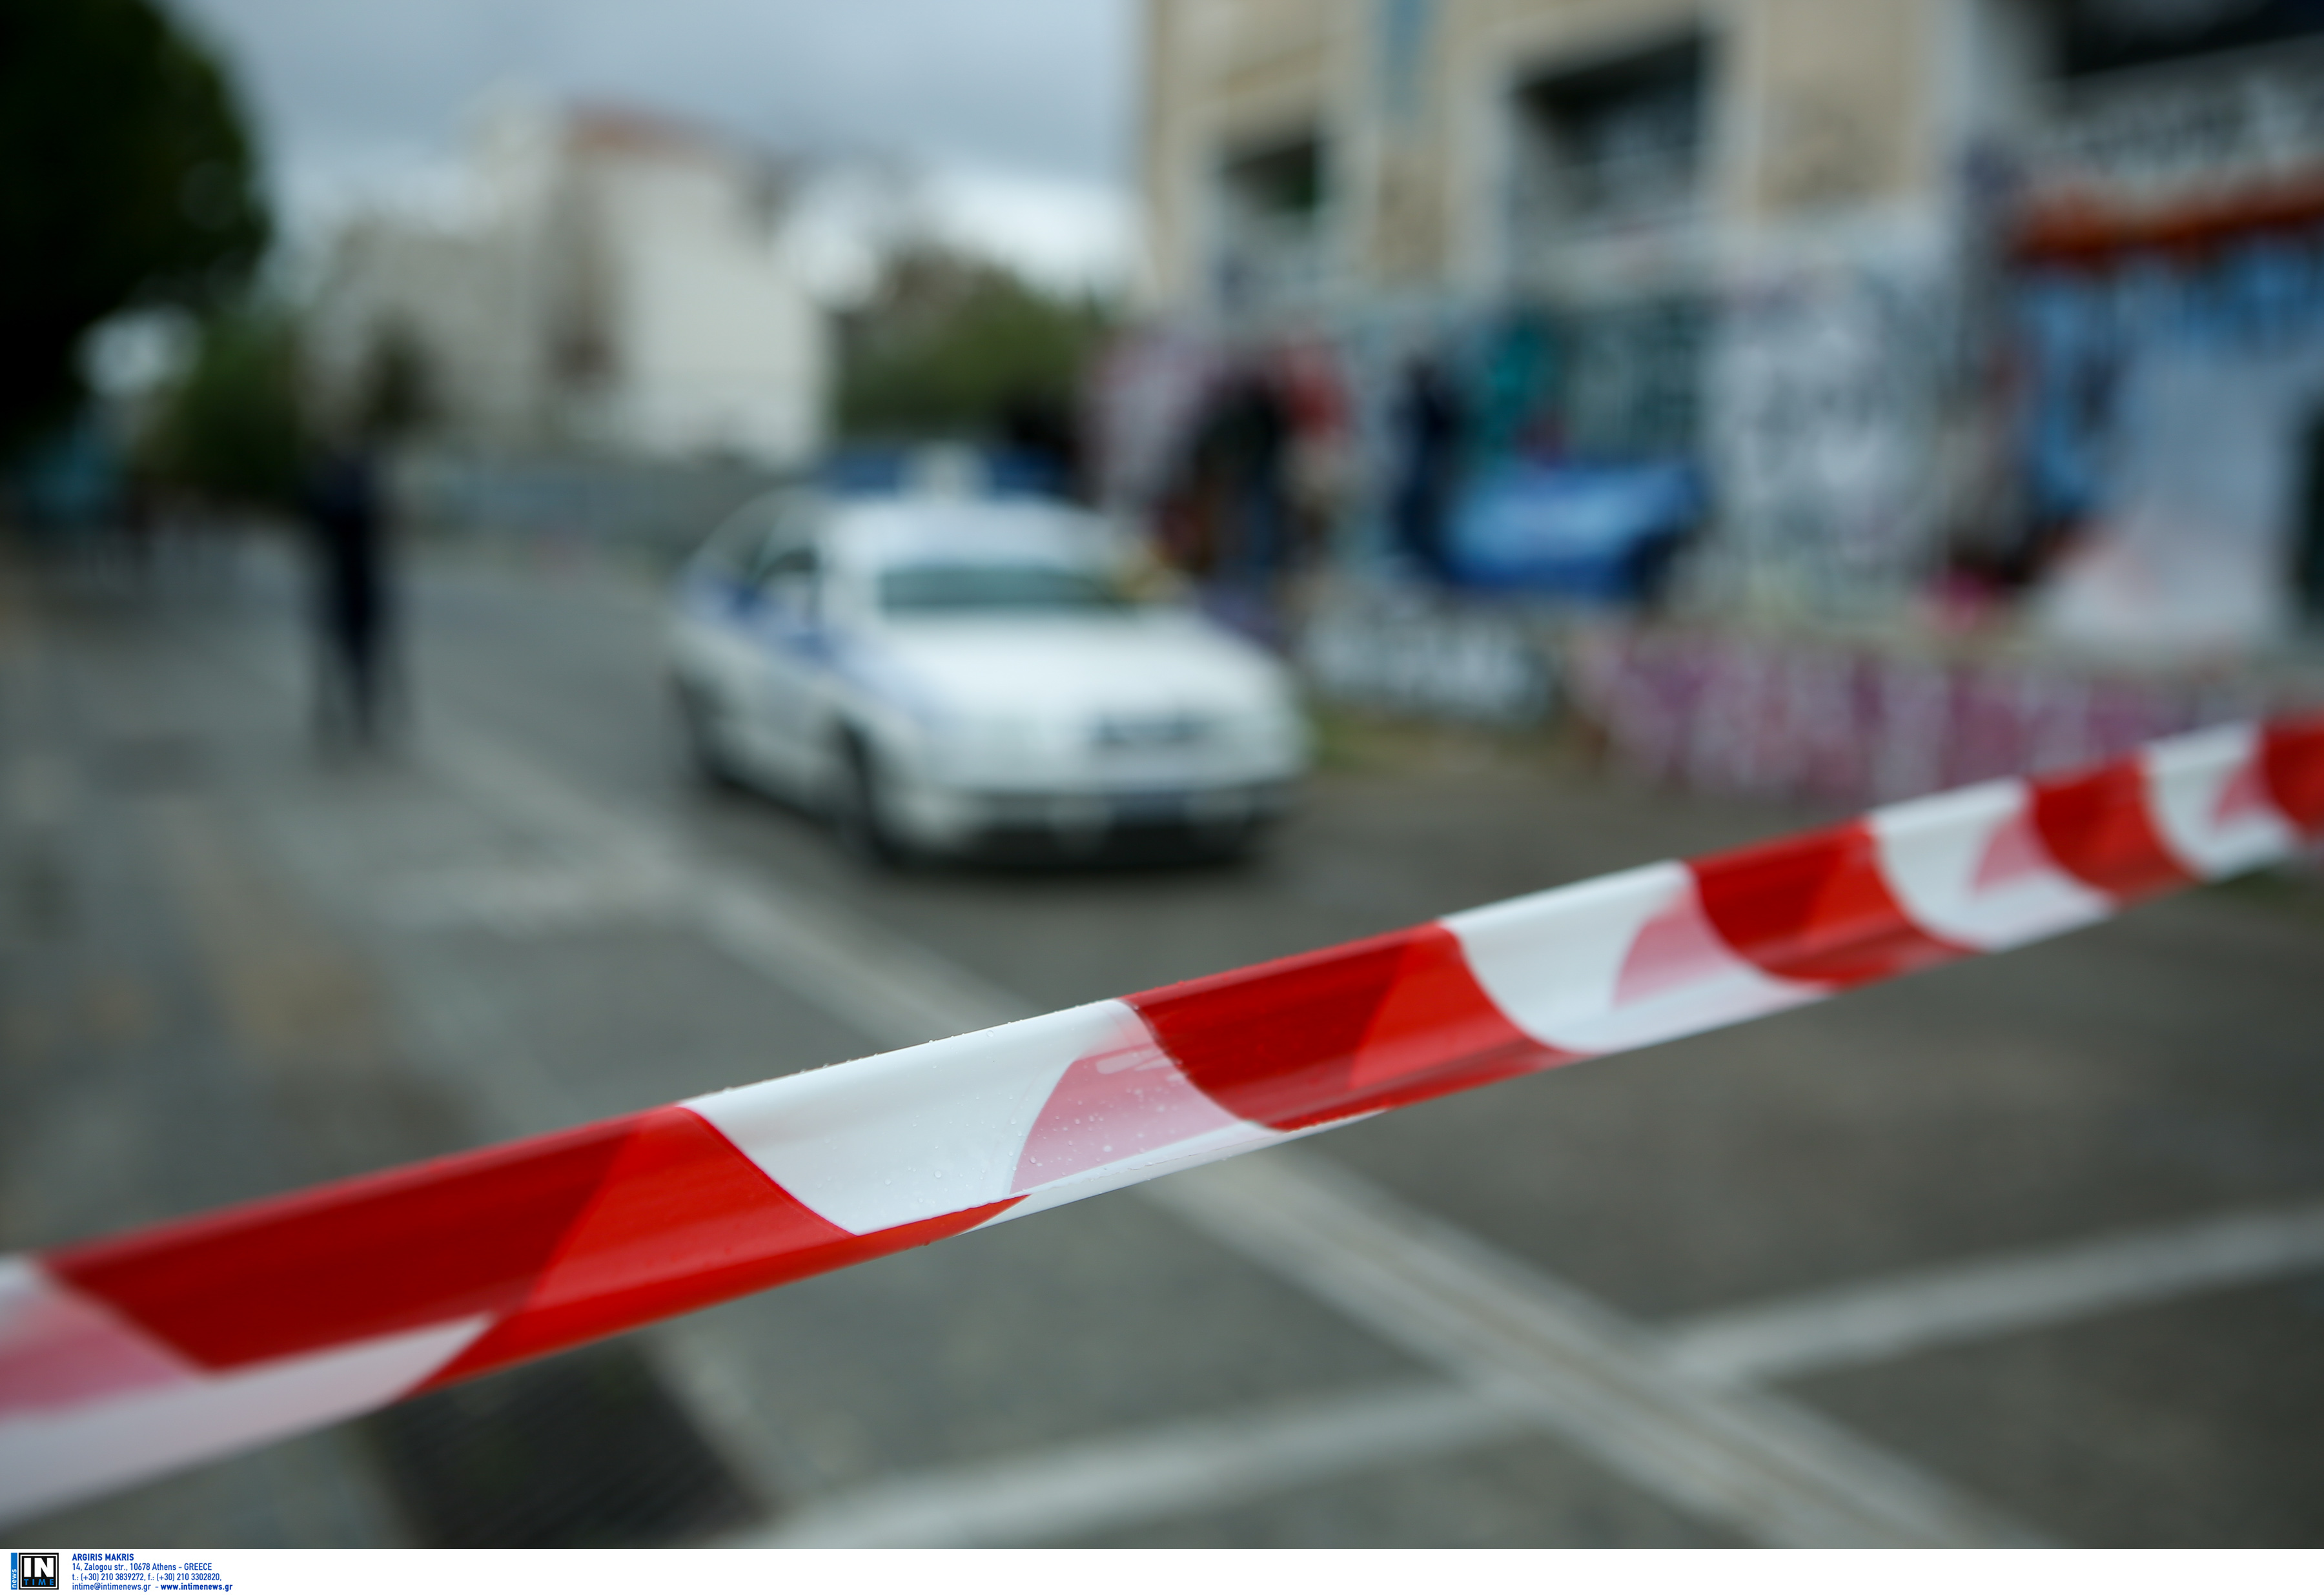 Μυτιλήνη: Έσκαγαν λάστιχα και έσπαγαν παρκαρισμένα αυτοκίνητα! Δύο ανήλικες ανάμεσα στους δράστες